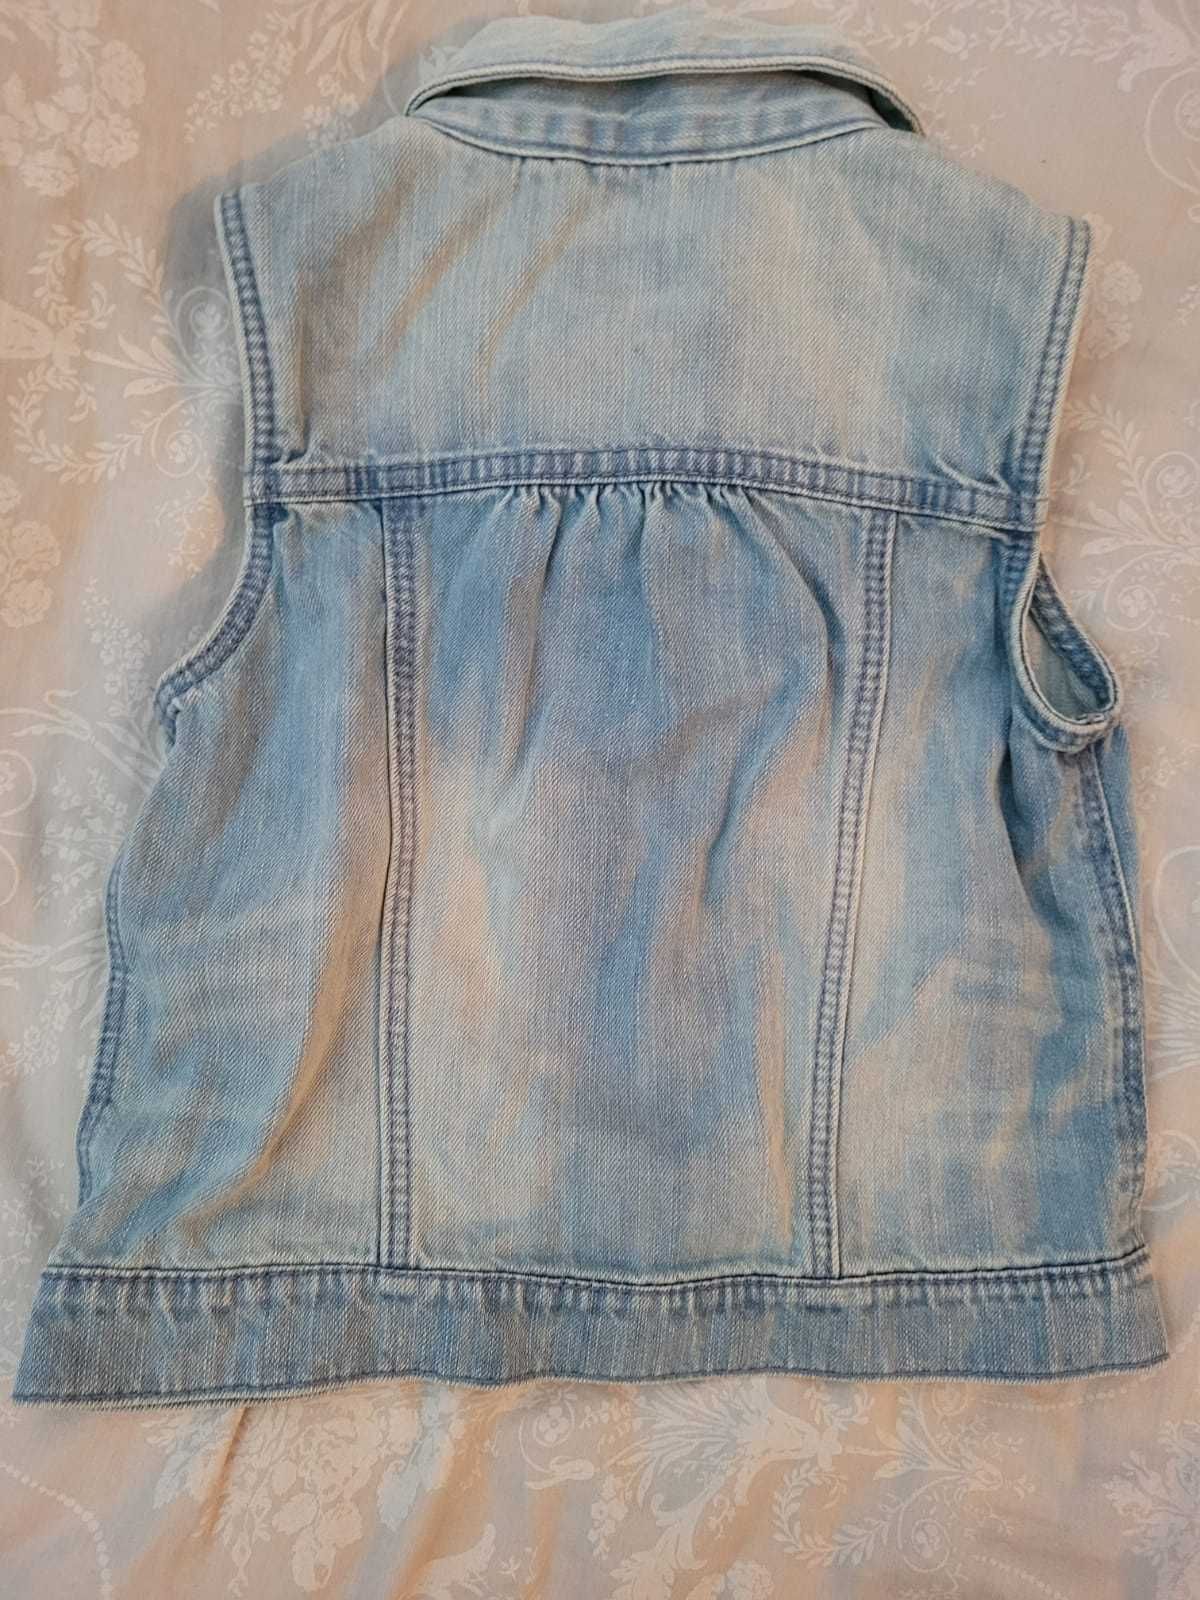 Kamizelka jeansowa bezrękawnik dżins dla dziewczynki F&F r.116 6-7 lat